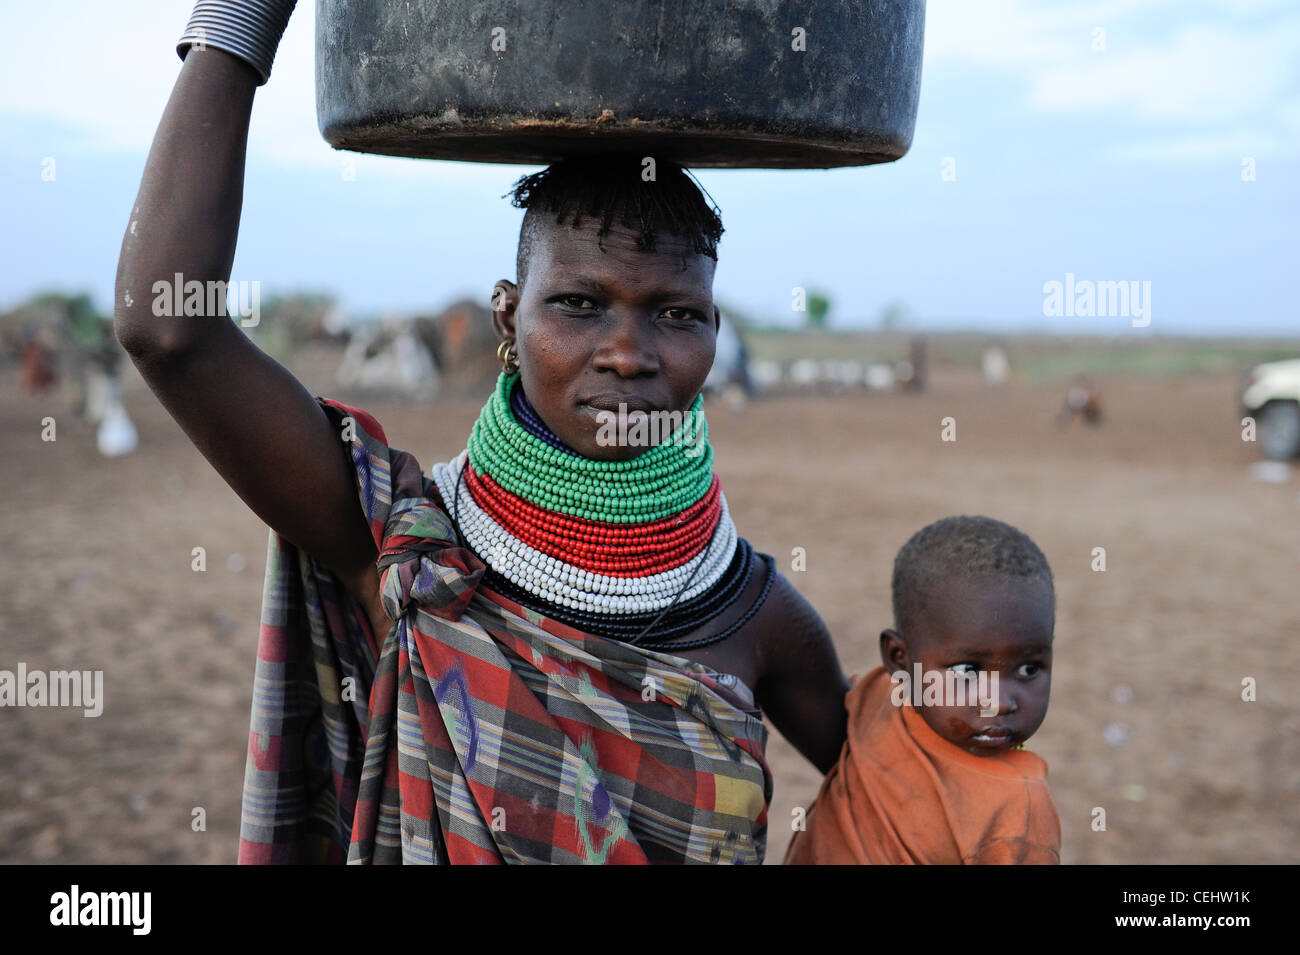 KENYA région Turkana, Kakuma , Turkana une tribu nilotique, la catastrophe de la faim sont permanentes en raison du changement climatique et de la sécheresse, Don Bosco distribue de la nourriture aux femmes et aux enfants affamés Banque D'Images